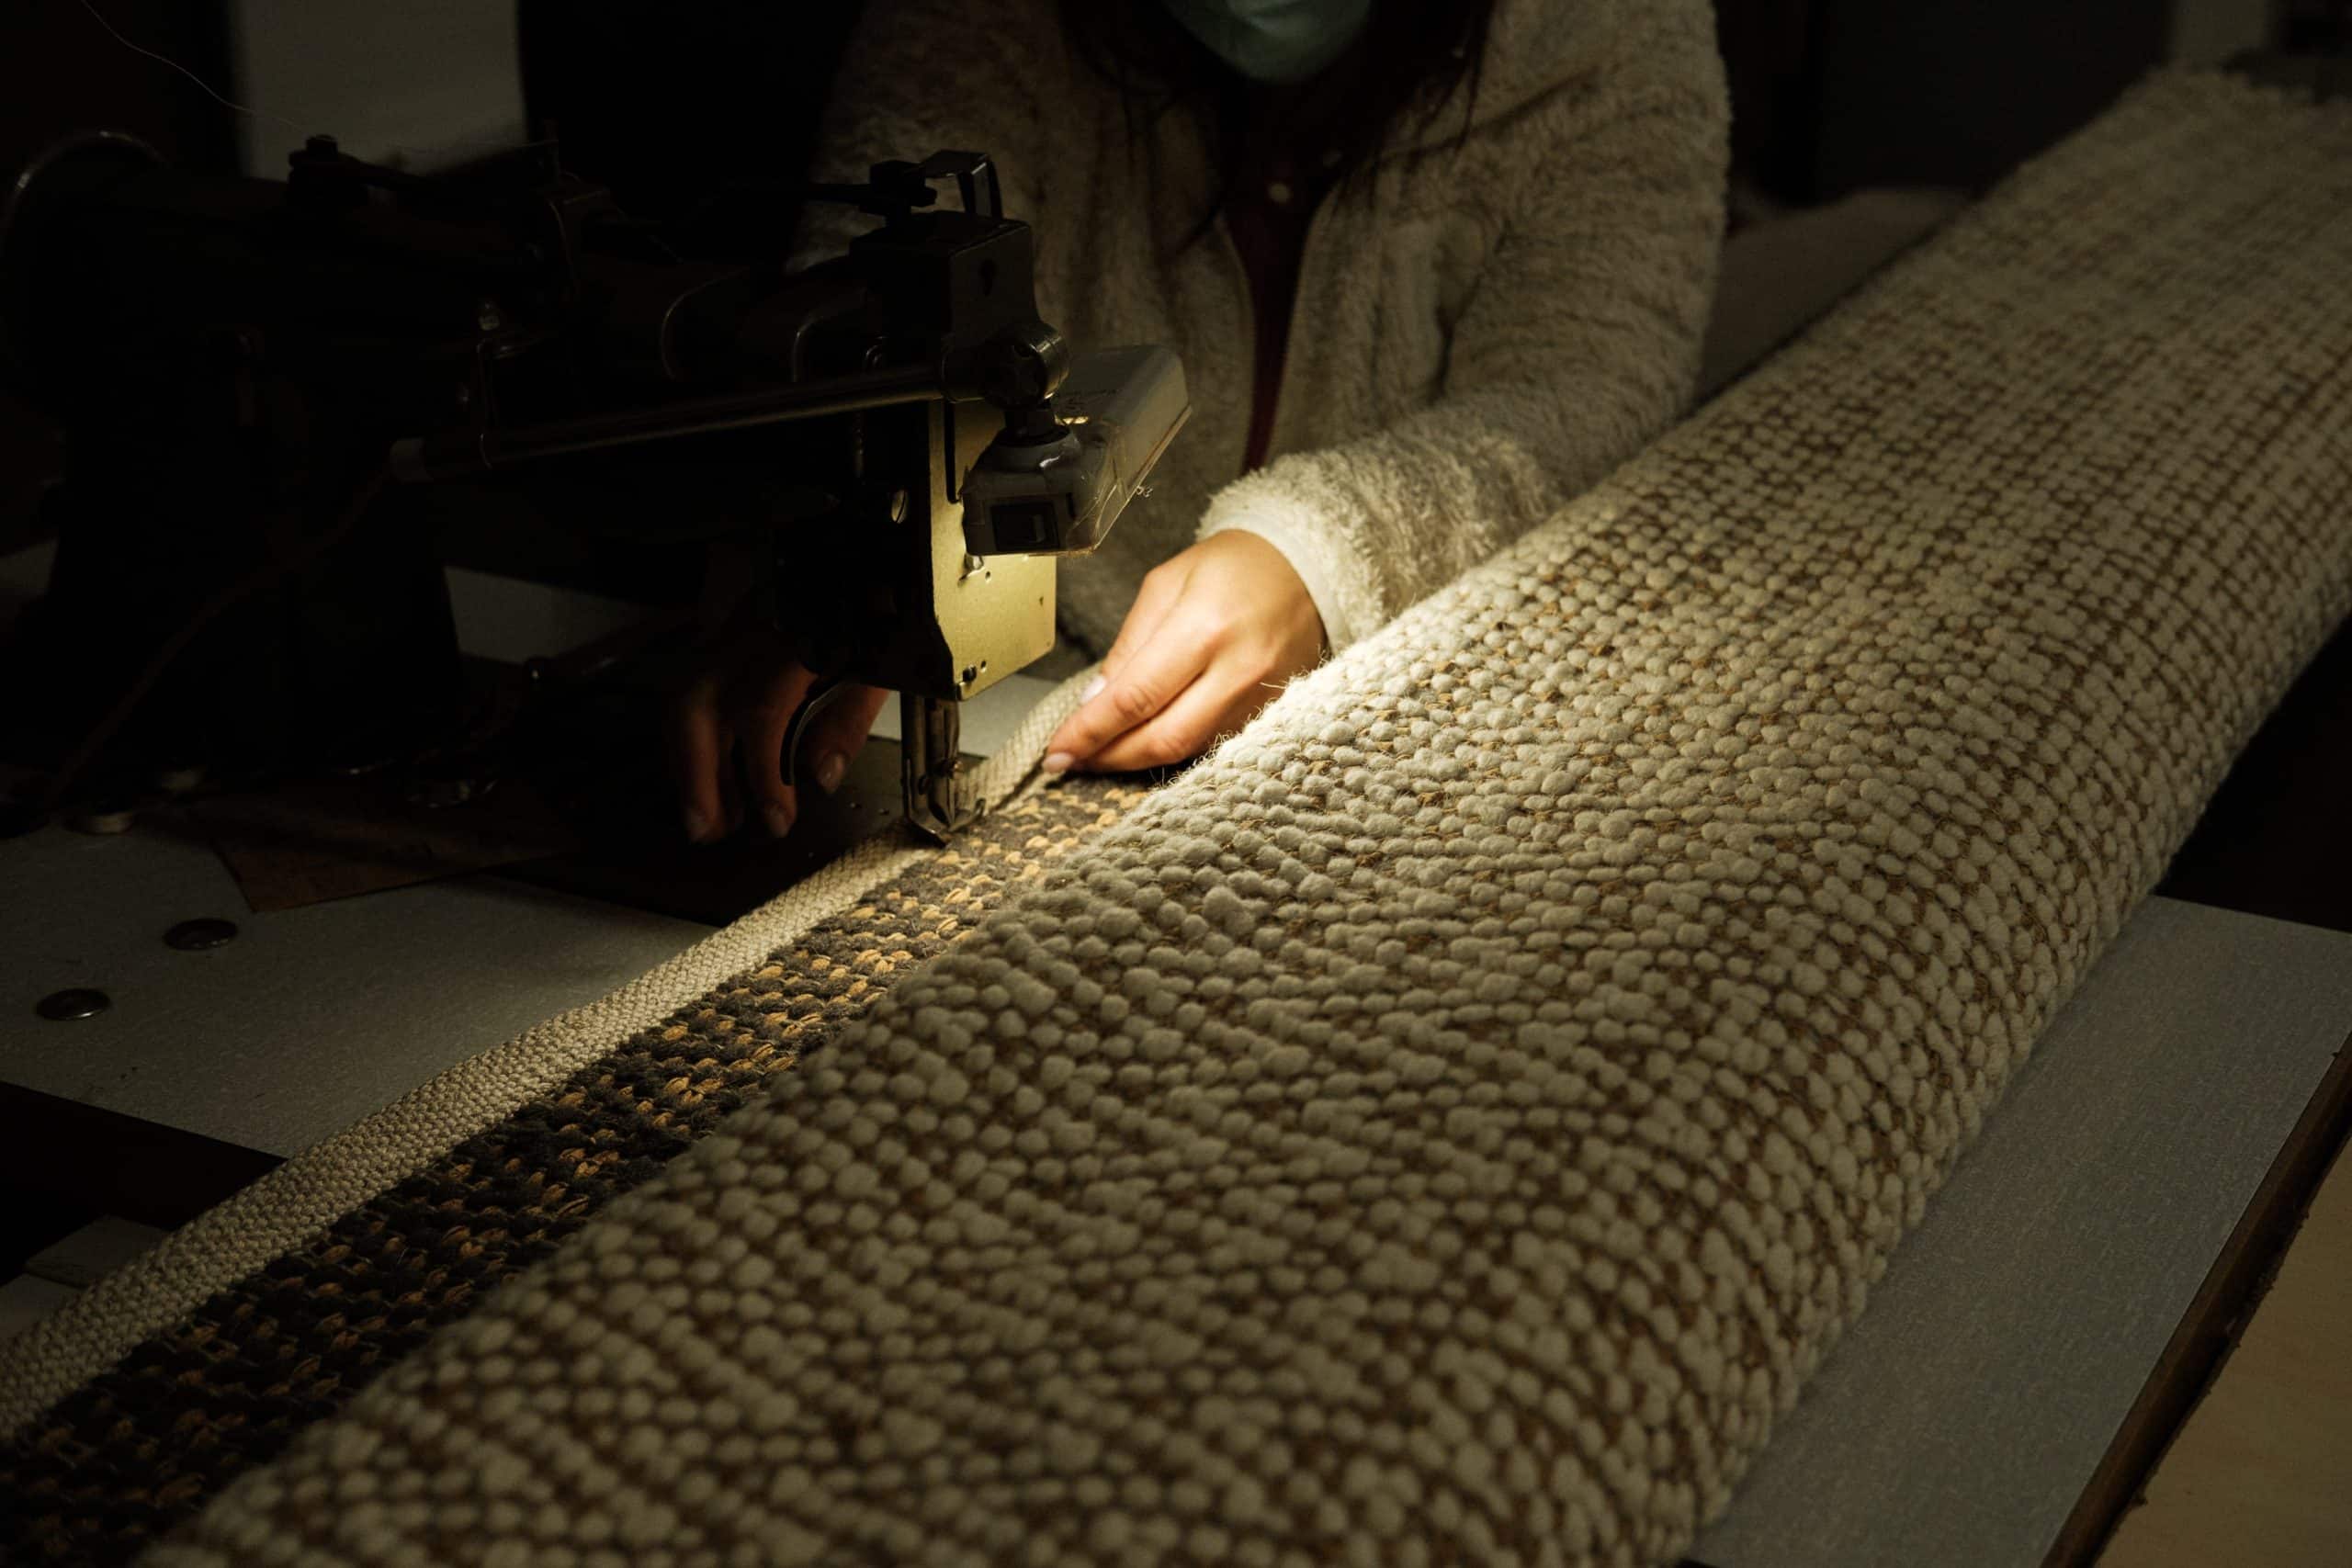 Mãos costurando um tapete na máquina de costura, com uma luz suave acima.